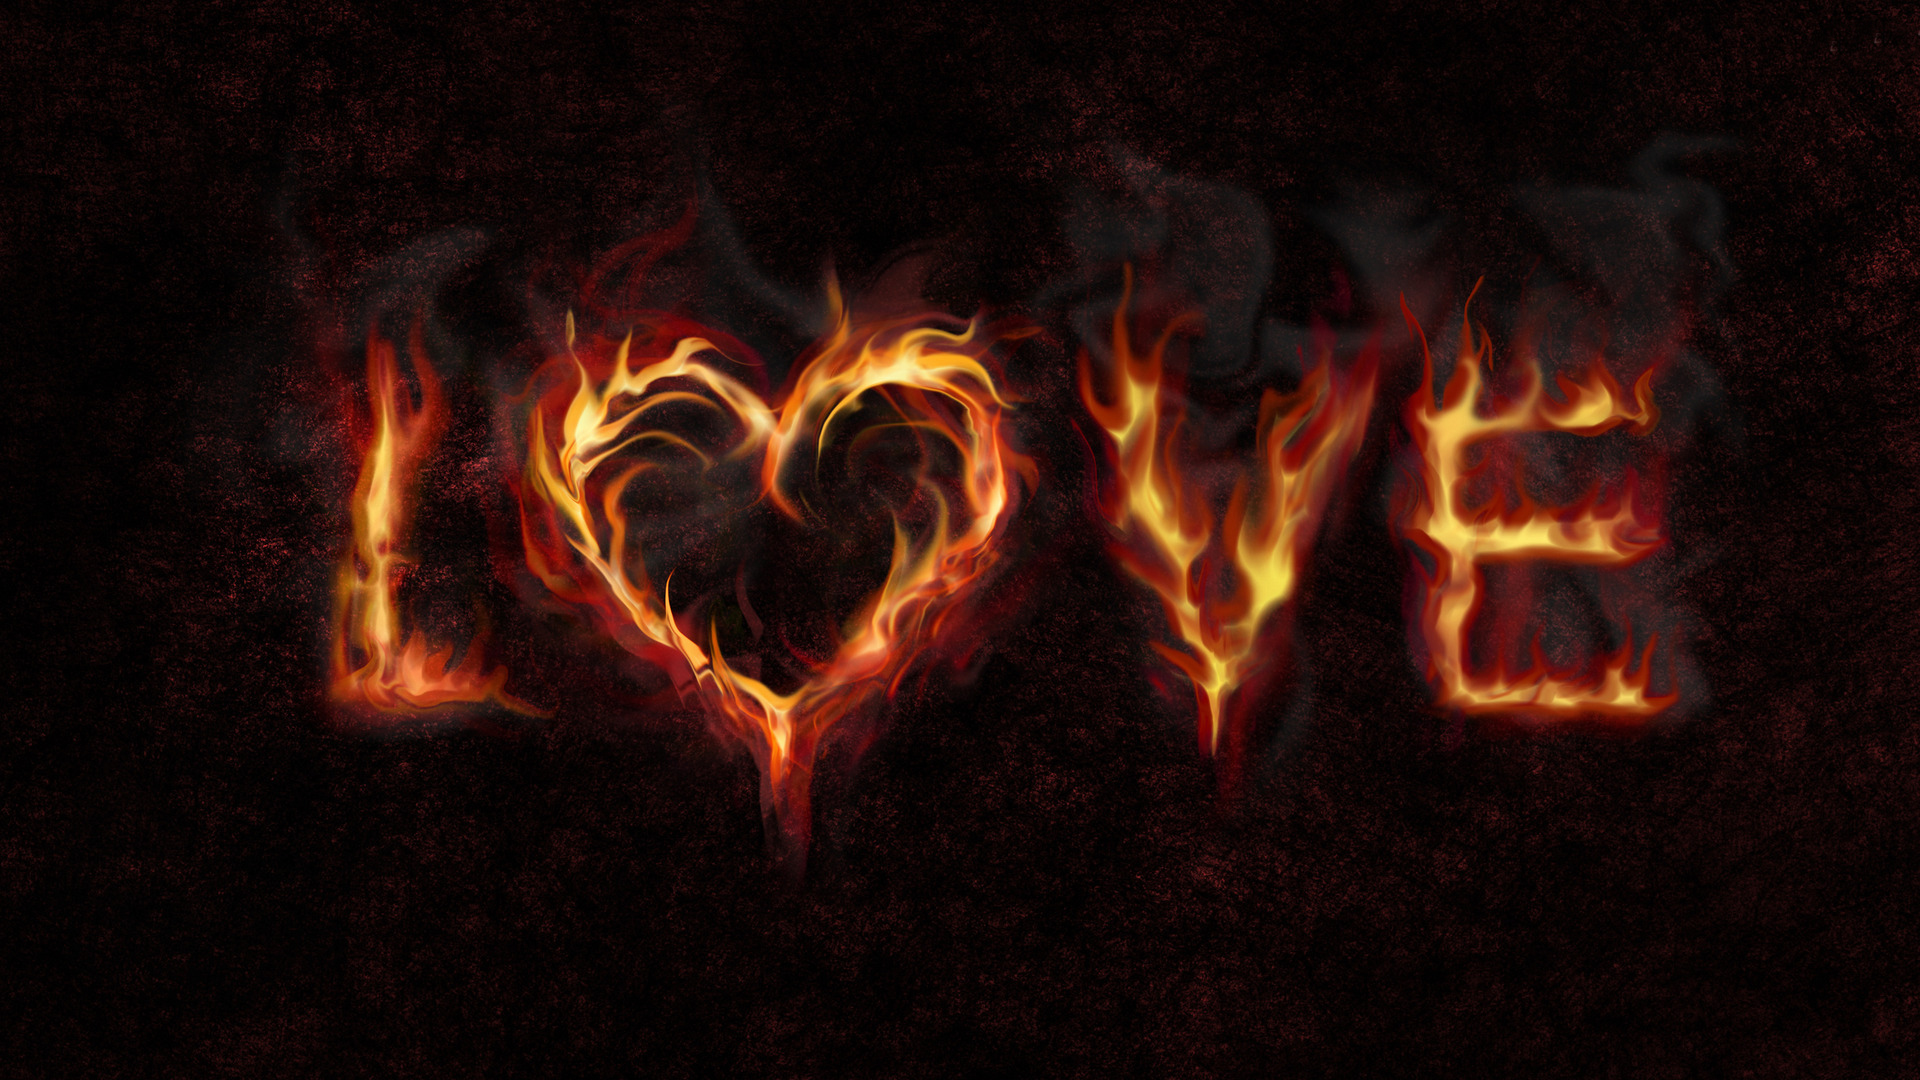 Fire Heart Wallpaper - Love Heart On Fire - HD Wallpaper 